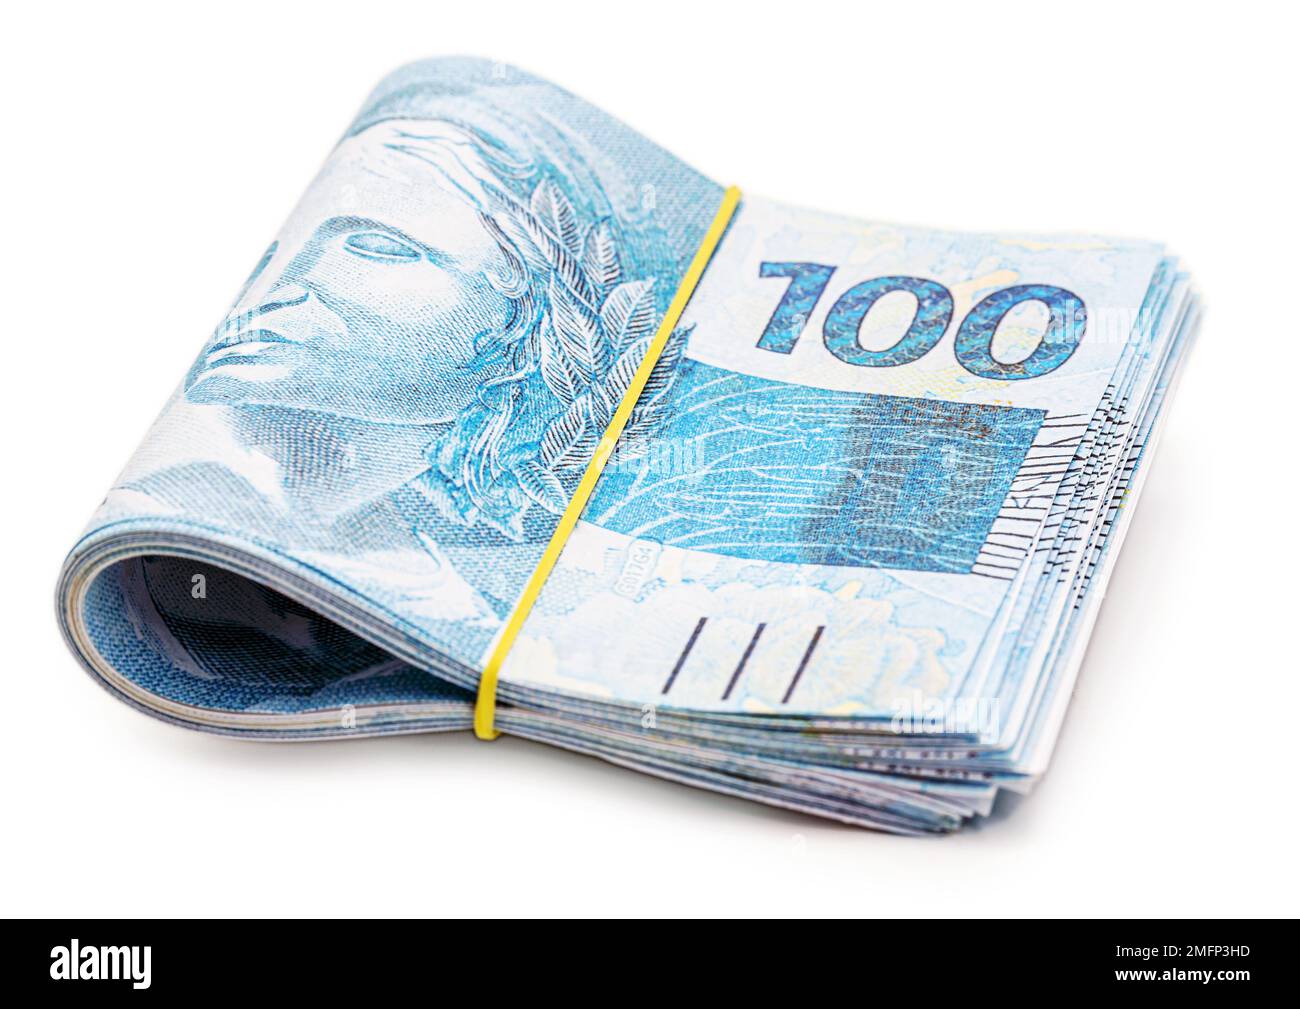 molte banconote da 100 reais, denaro brasiliano, migliaia di reais, pagamento, stipendio, su sfondo bianco isolato Foto Stock